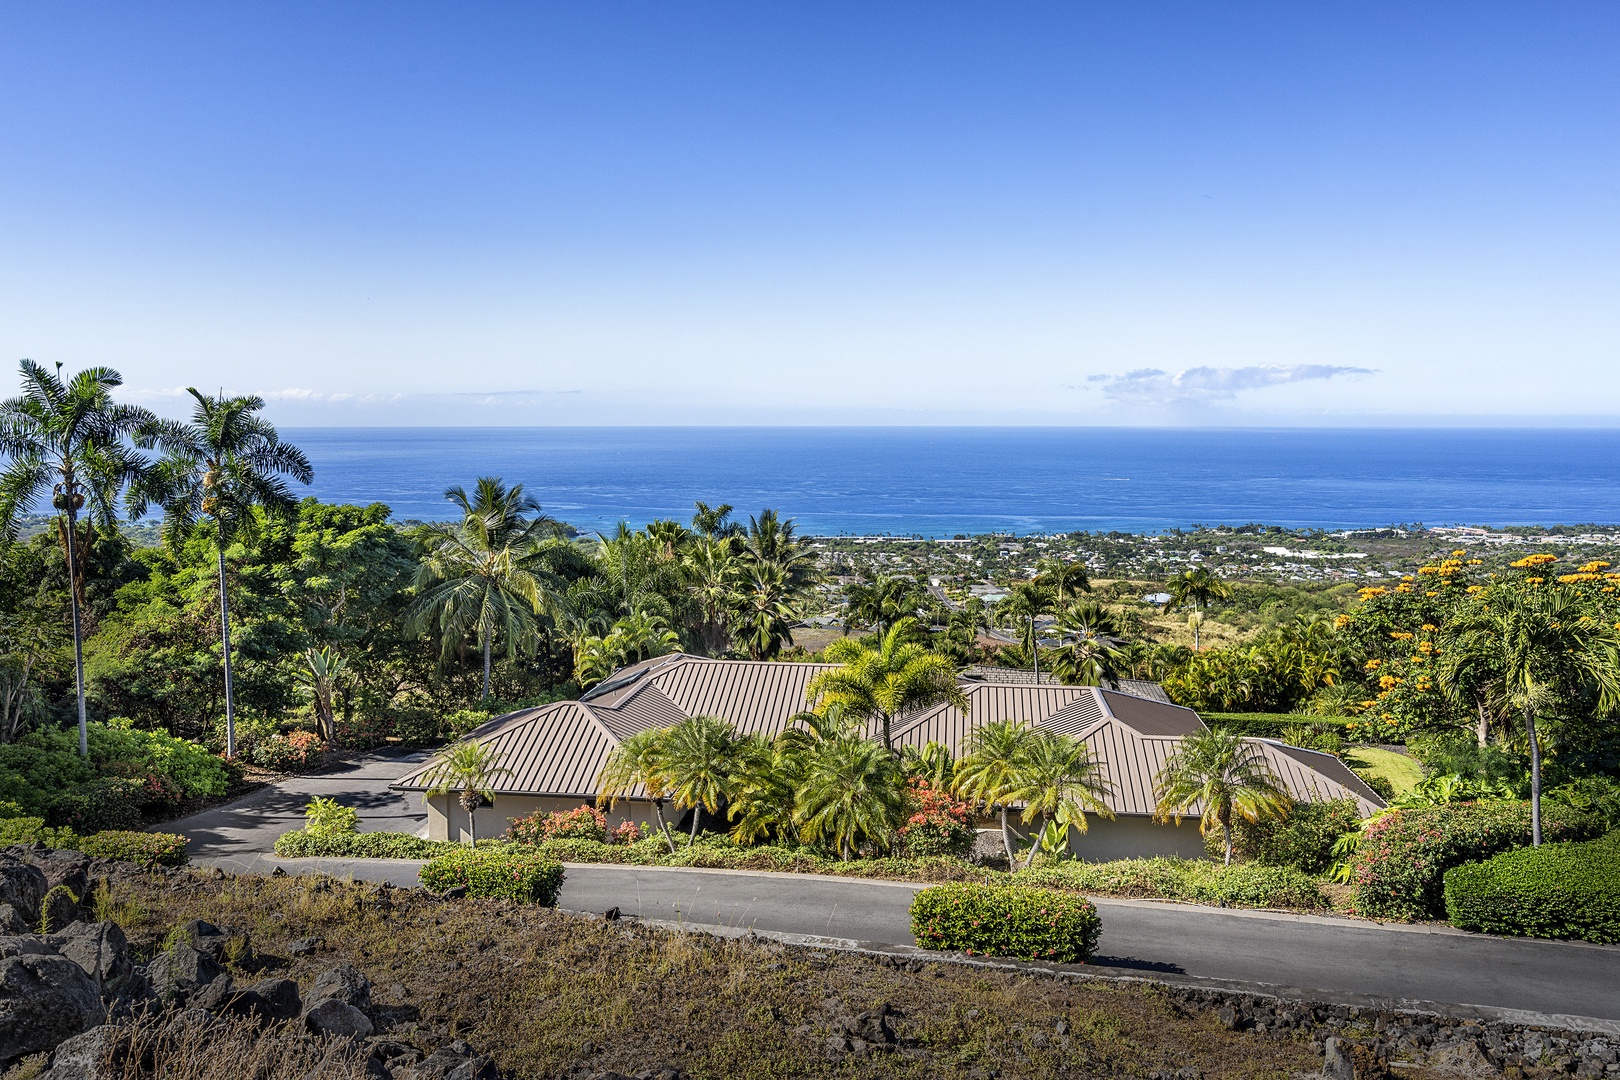 Kailua Kona Vacation Rentals, Hale Aikane - Aerial view of the home